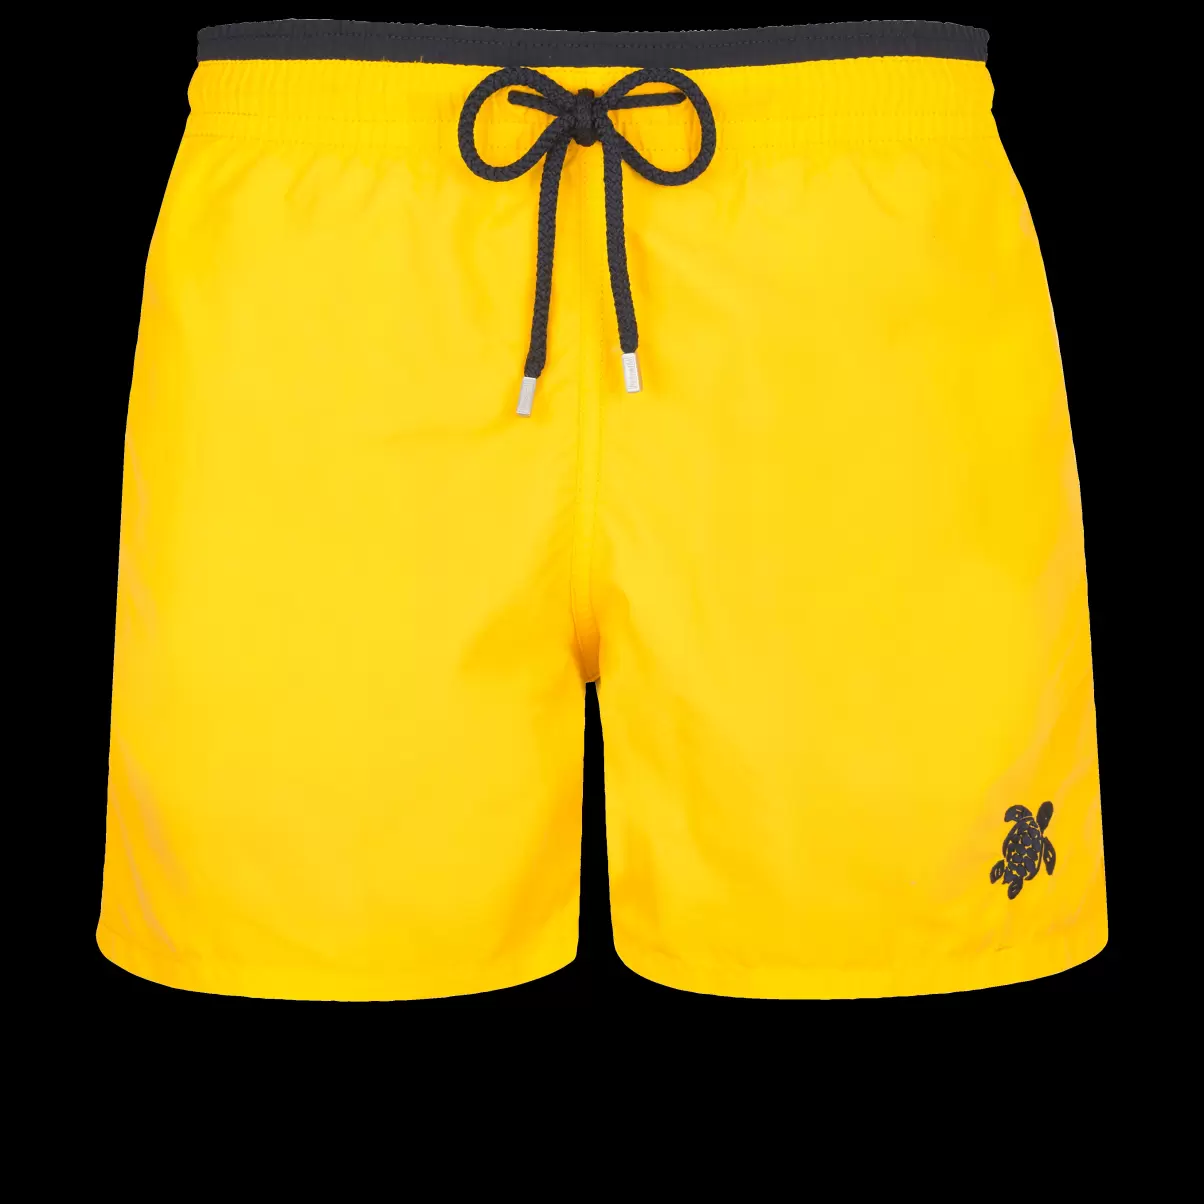 Herren Sonne / Gelb Zweifarbige Solid Bicolore Badeshorts Für Herren Der Klassiker Moorea Marke Vilebrequin - 3